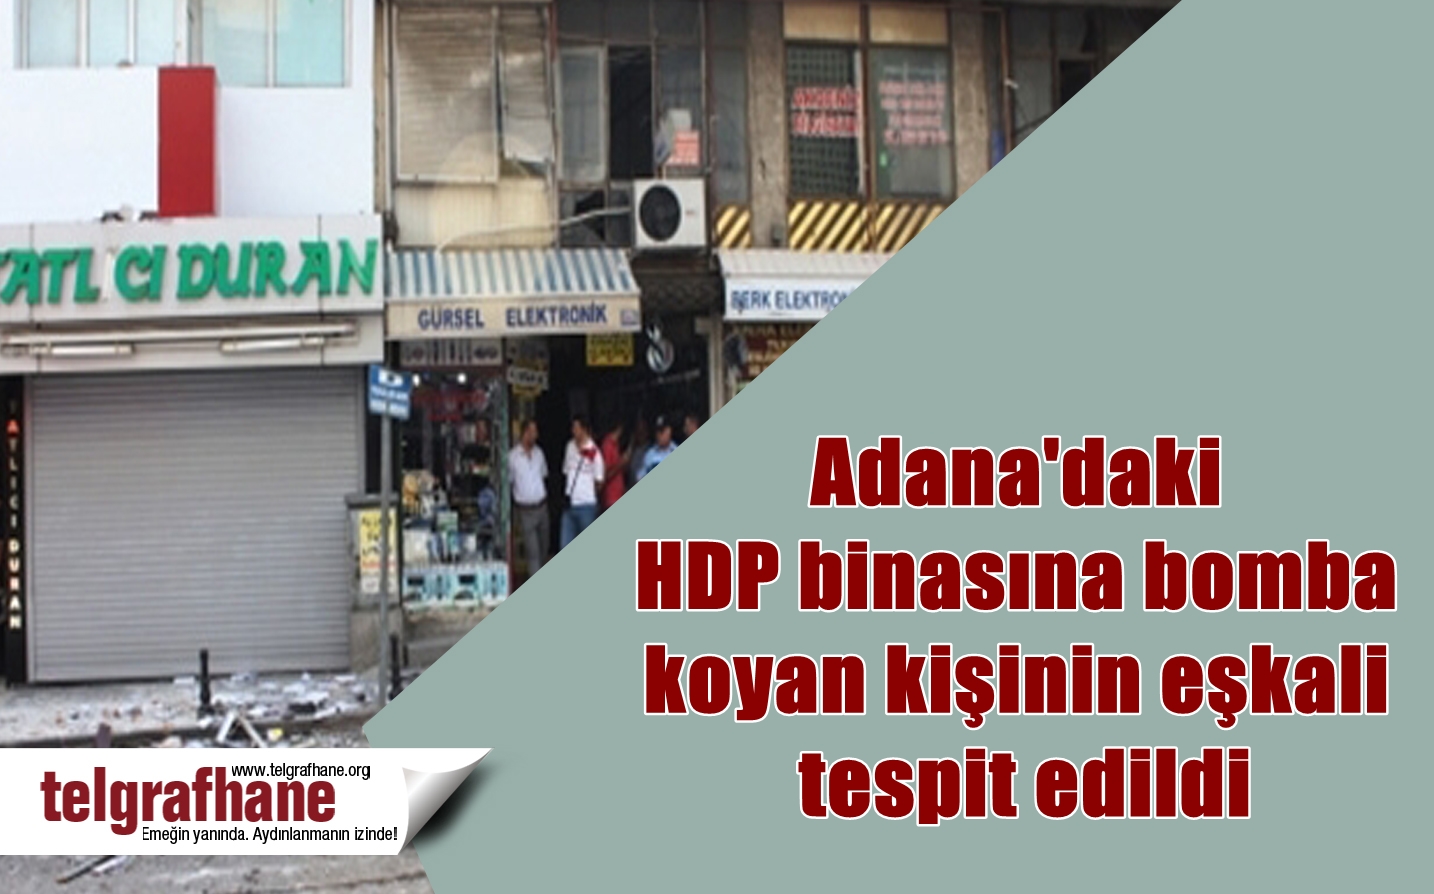 Adana’daki HDP binasına bomba koyan kişinin eşkali tespit edildi